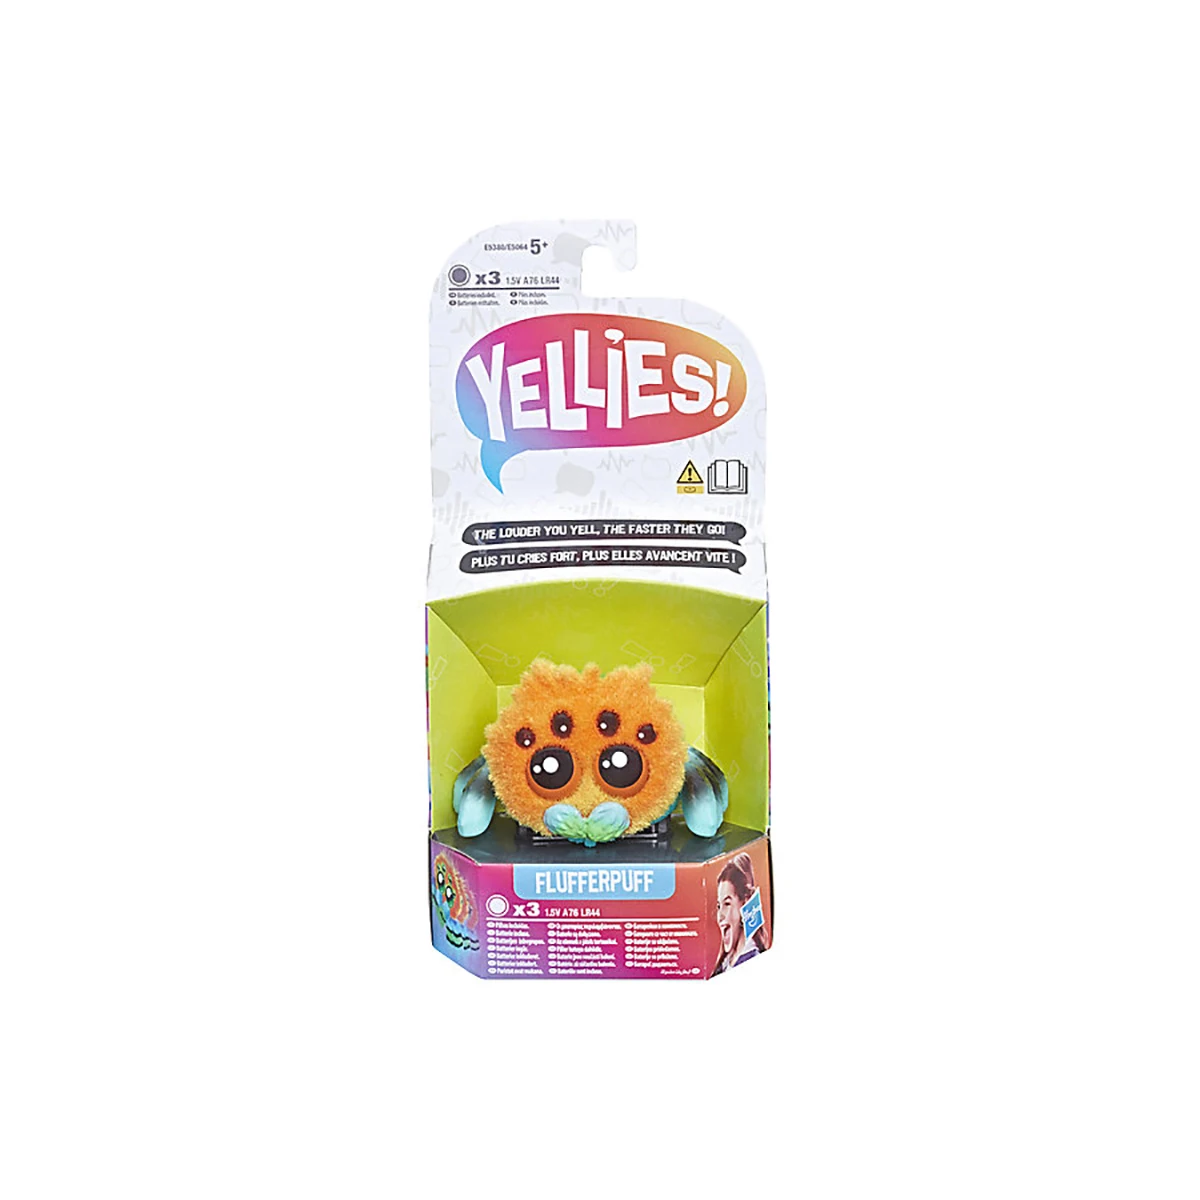 Интерактивная игрушка Hasbro "Yellies" Паучок Флаферпуф